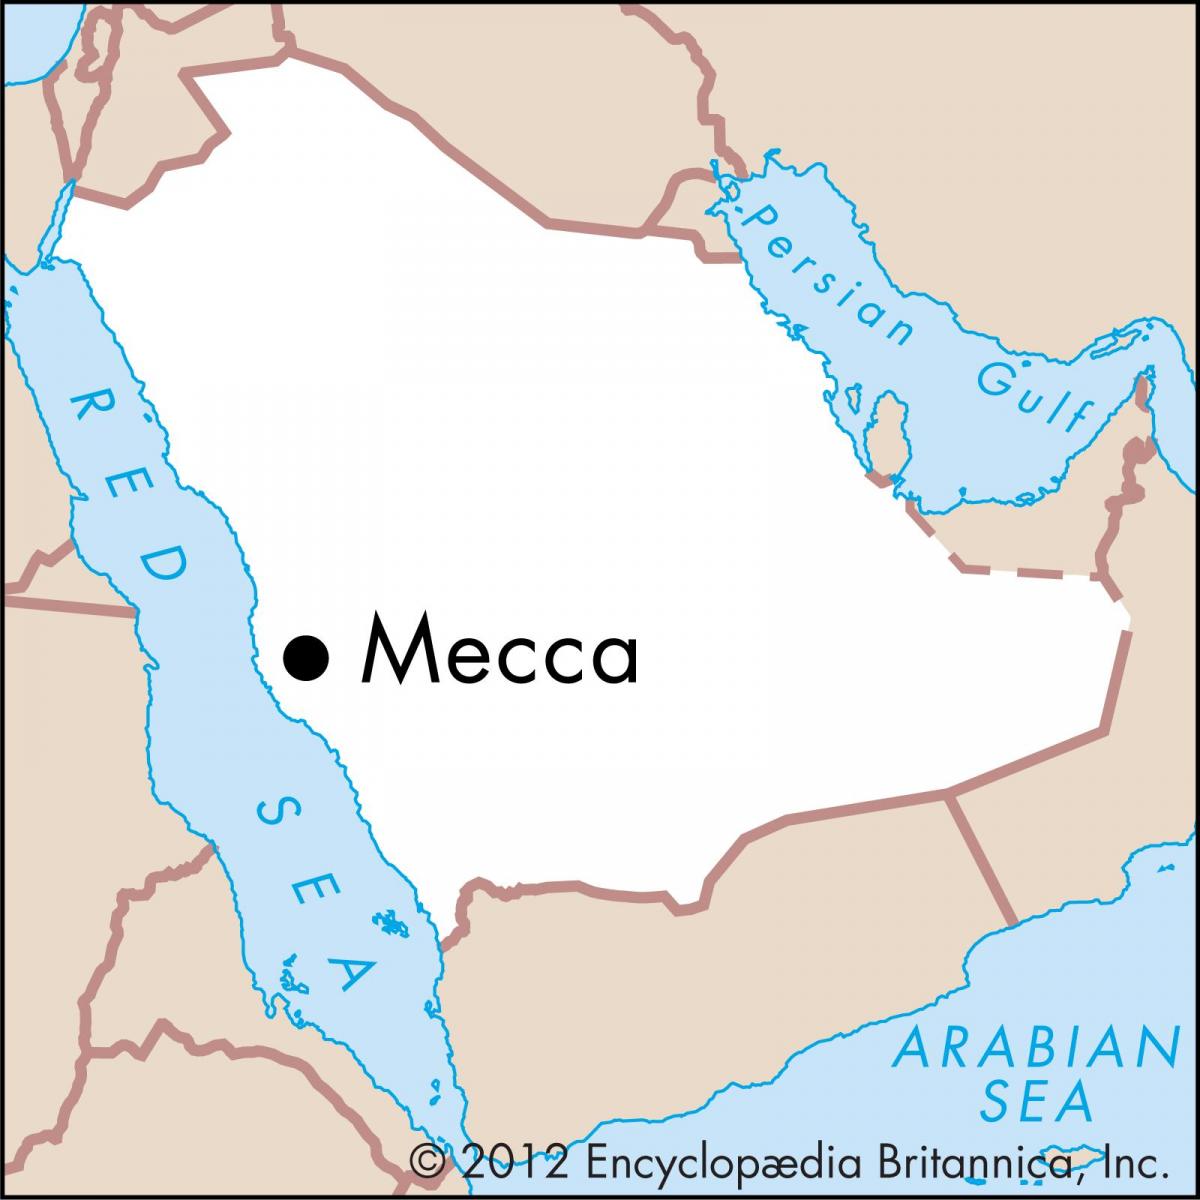 نقشه masarat پادشاهی 3 مکه